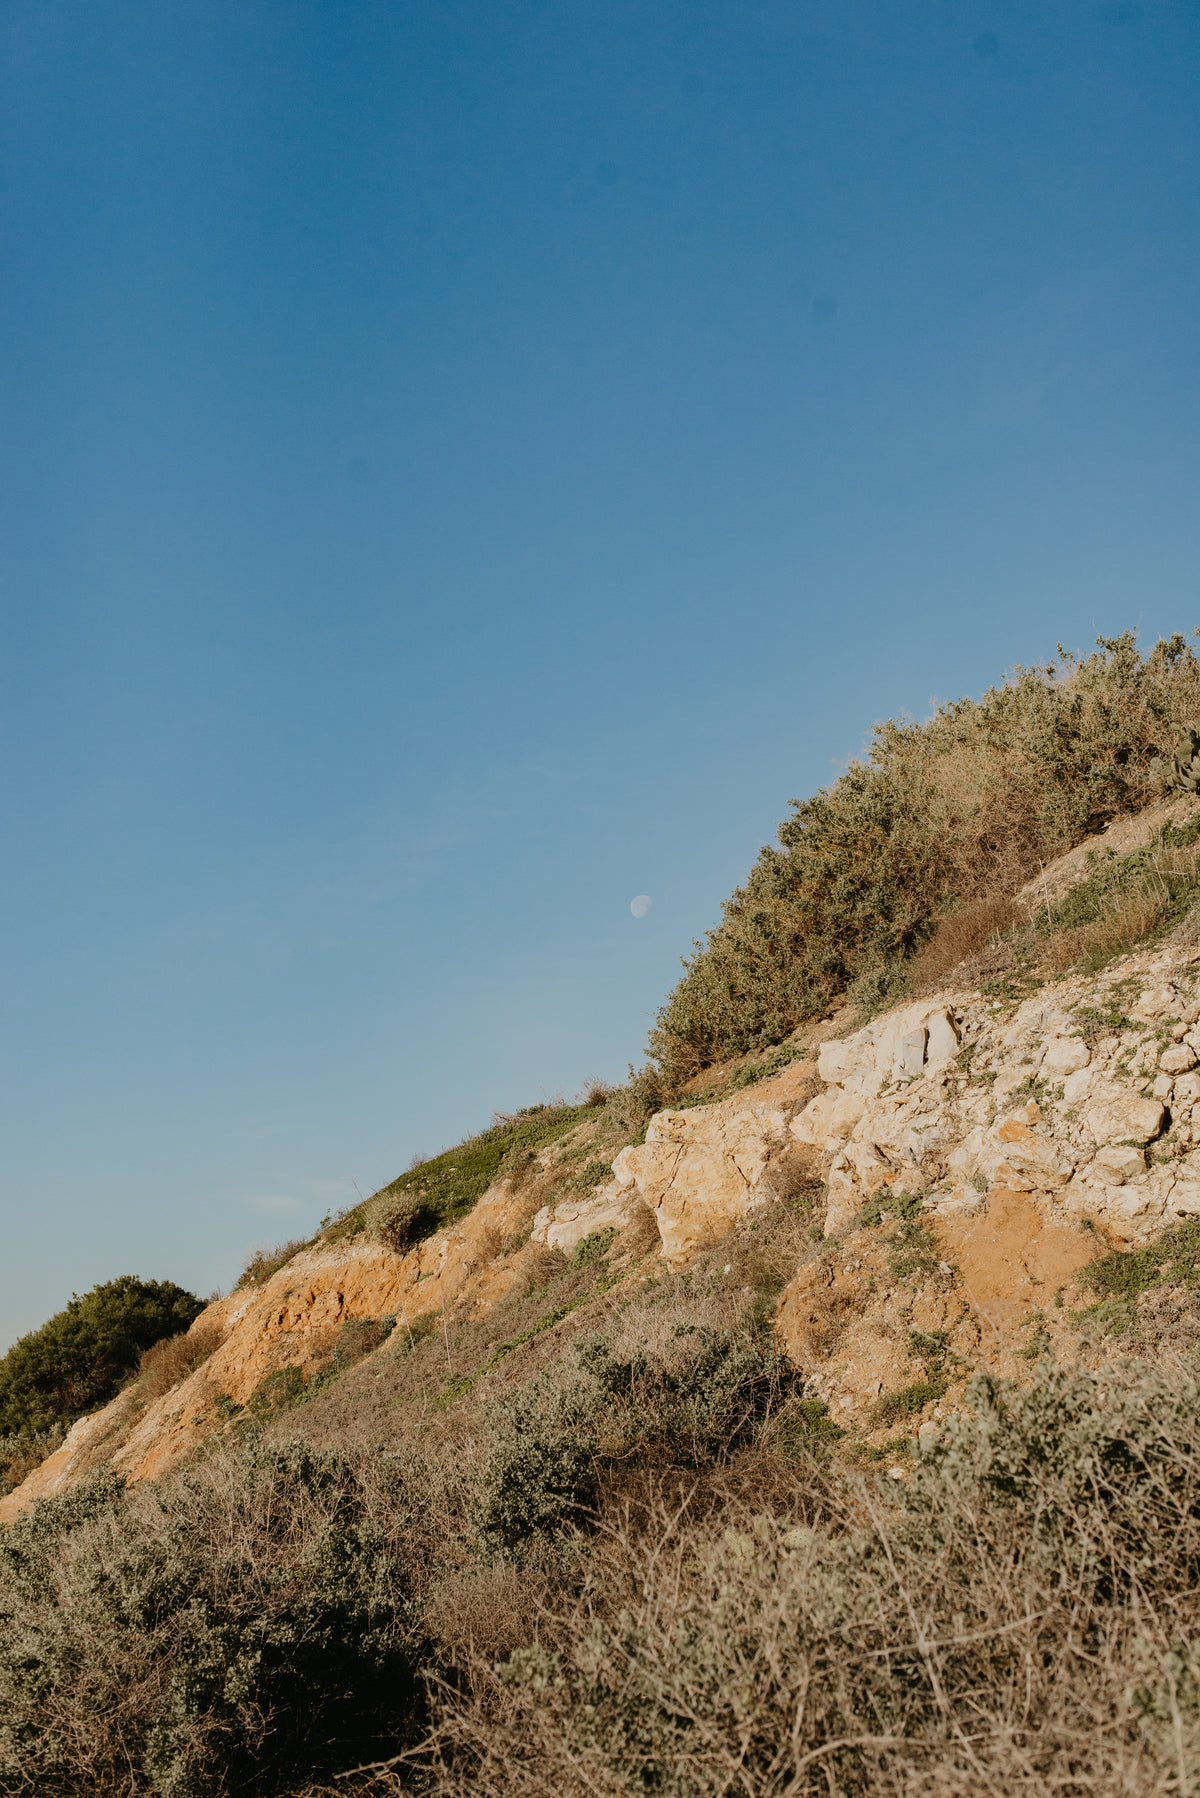 洁白的月亮挂在清脆的蓝天上，旁边是悬崖峭壁